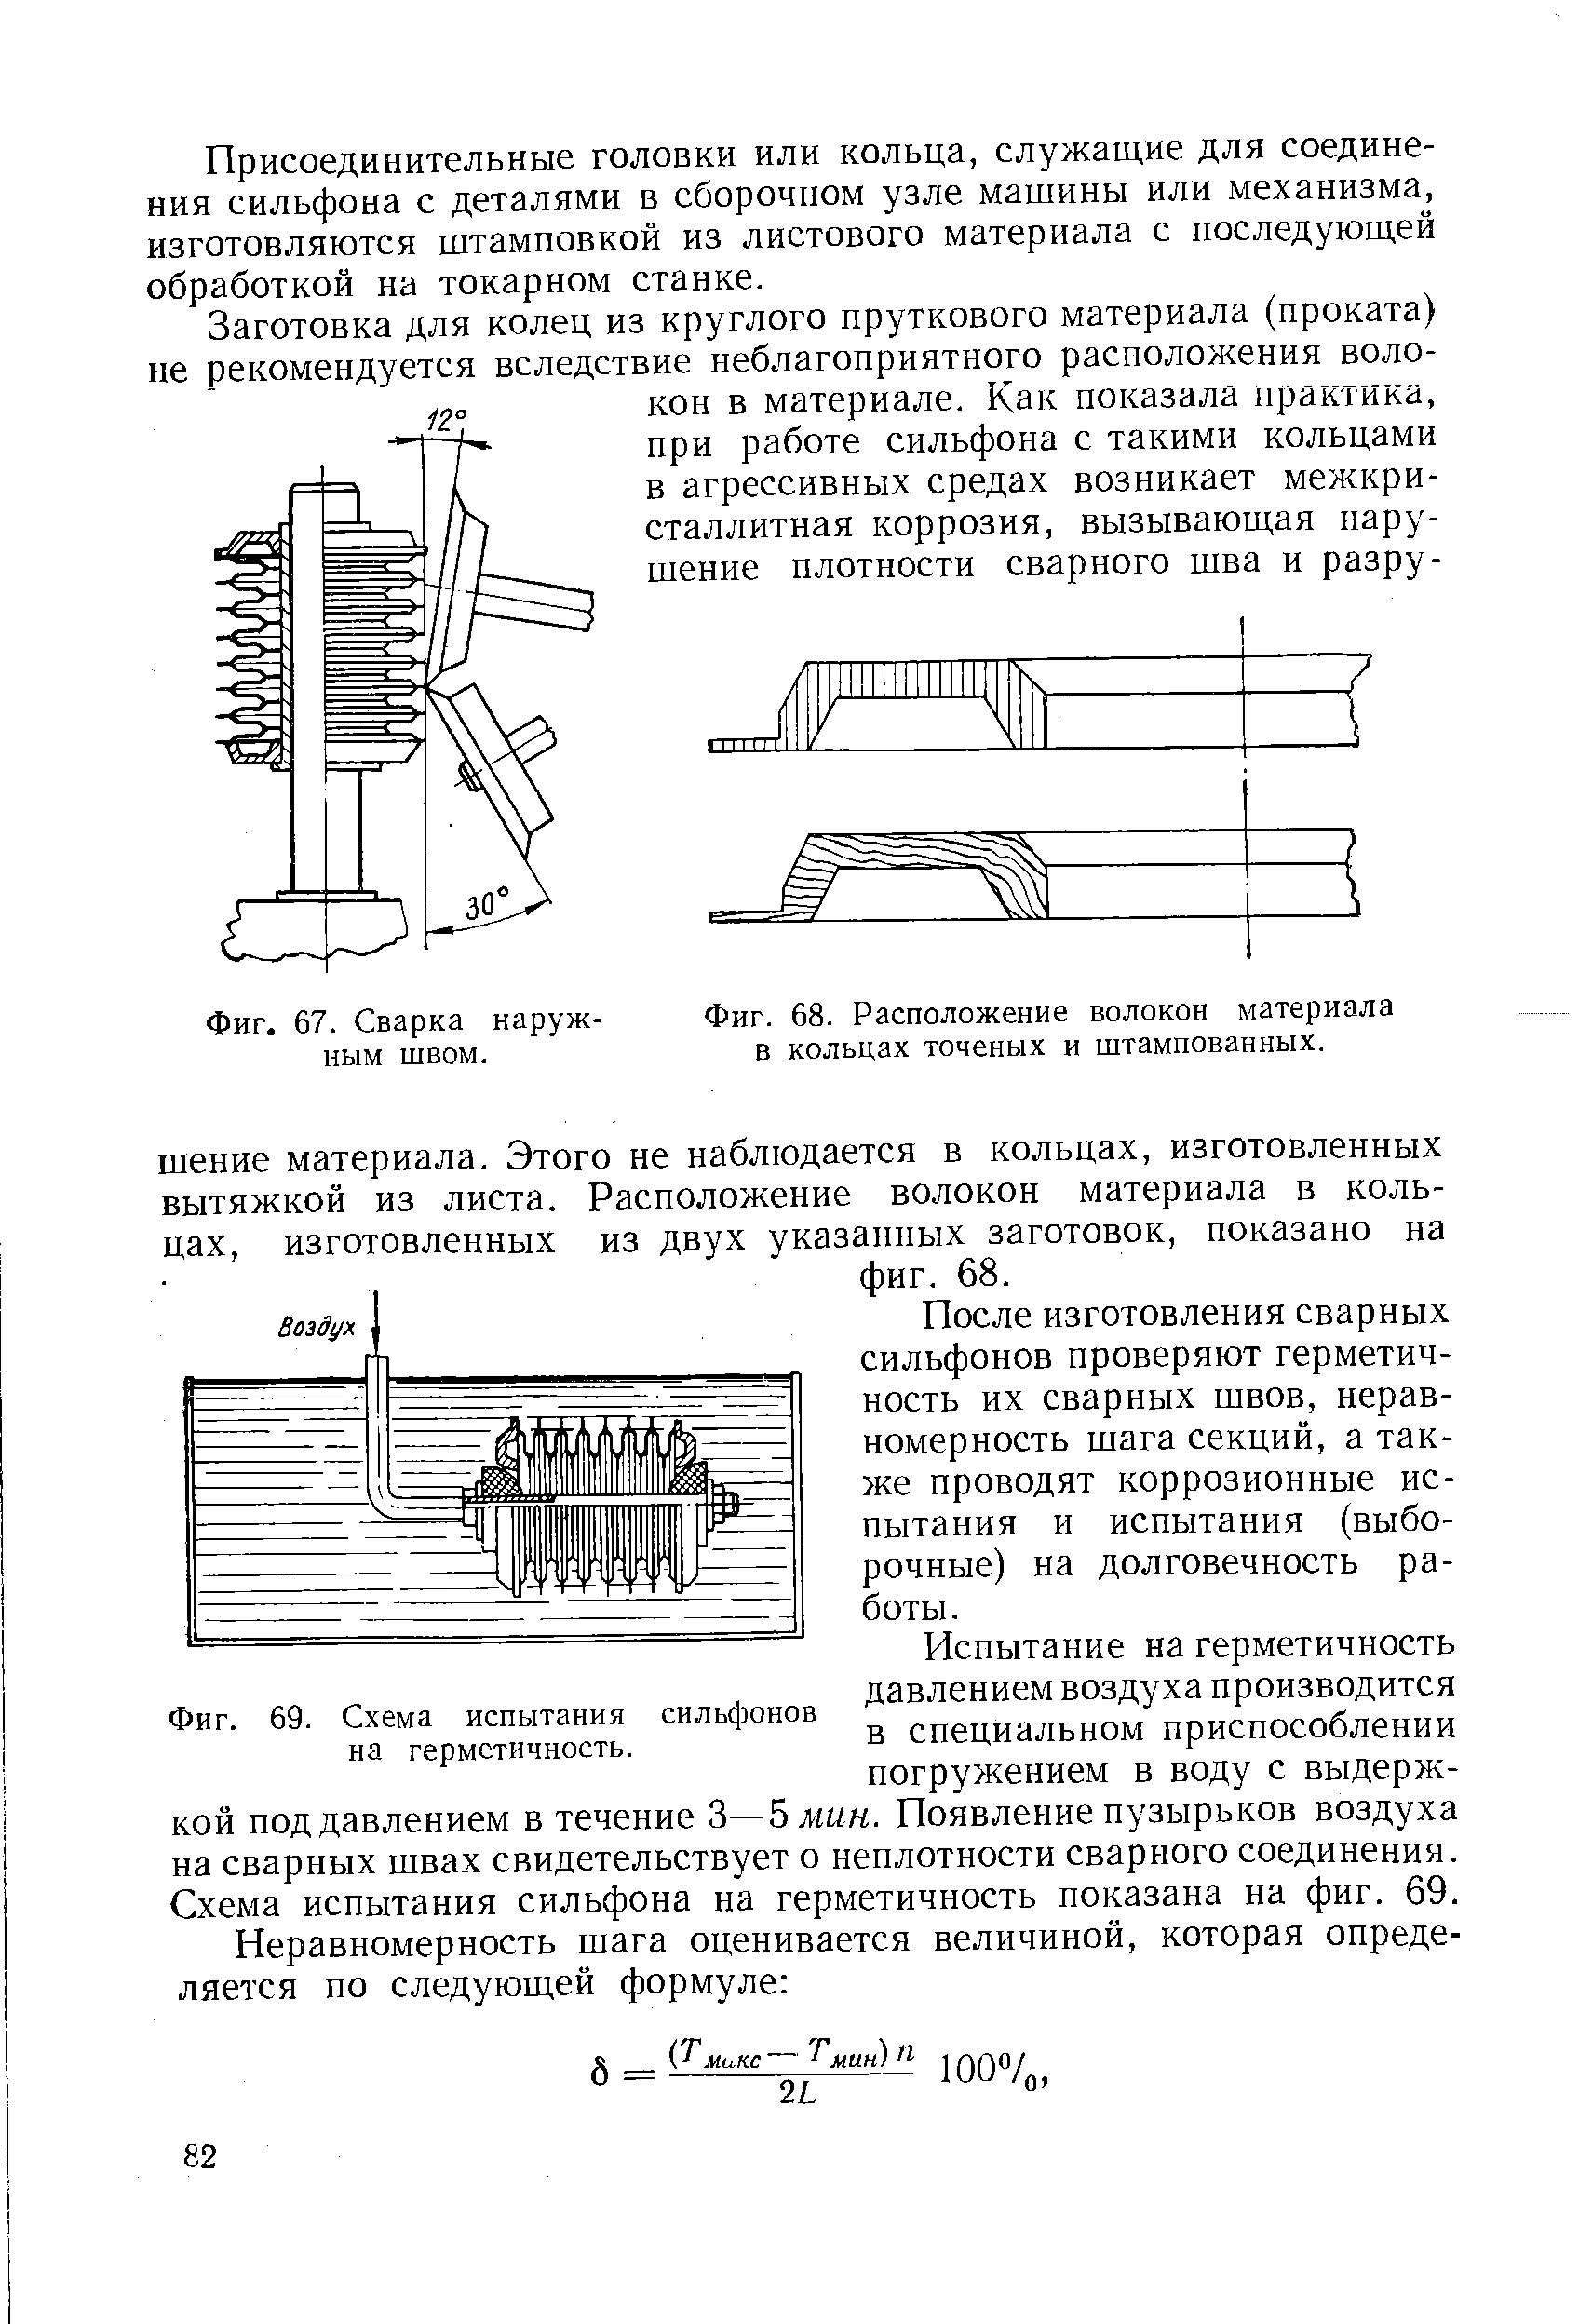 Фиг. 69. Схема испытания сильфонов на герметичность.
